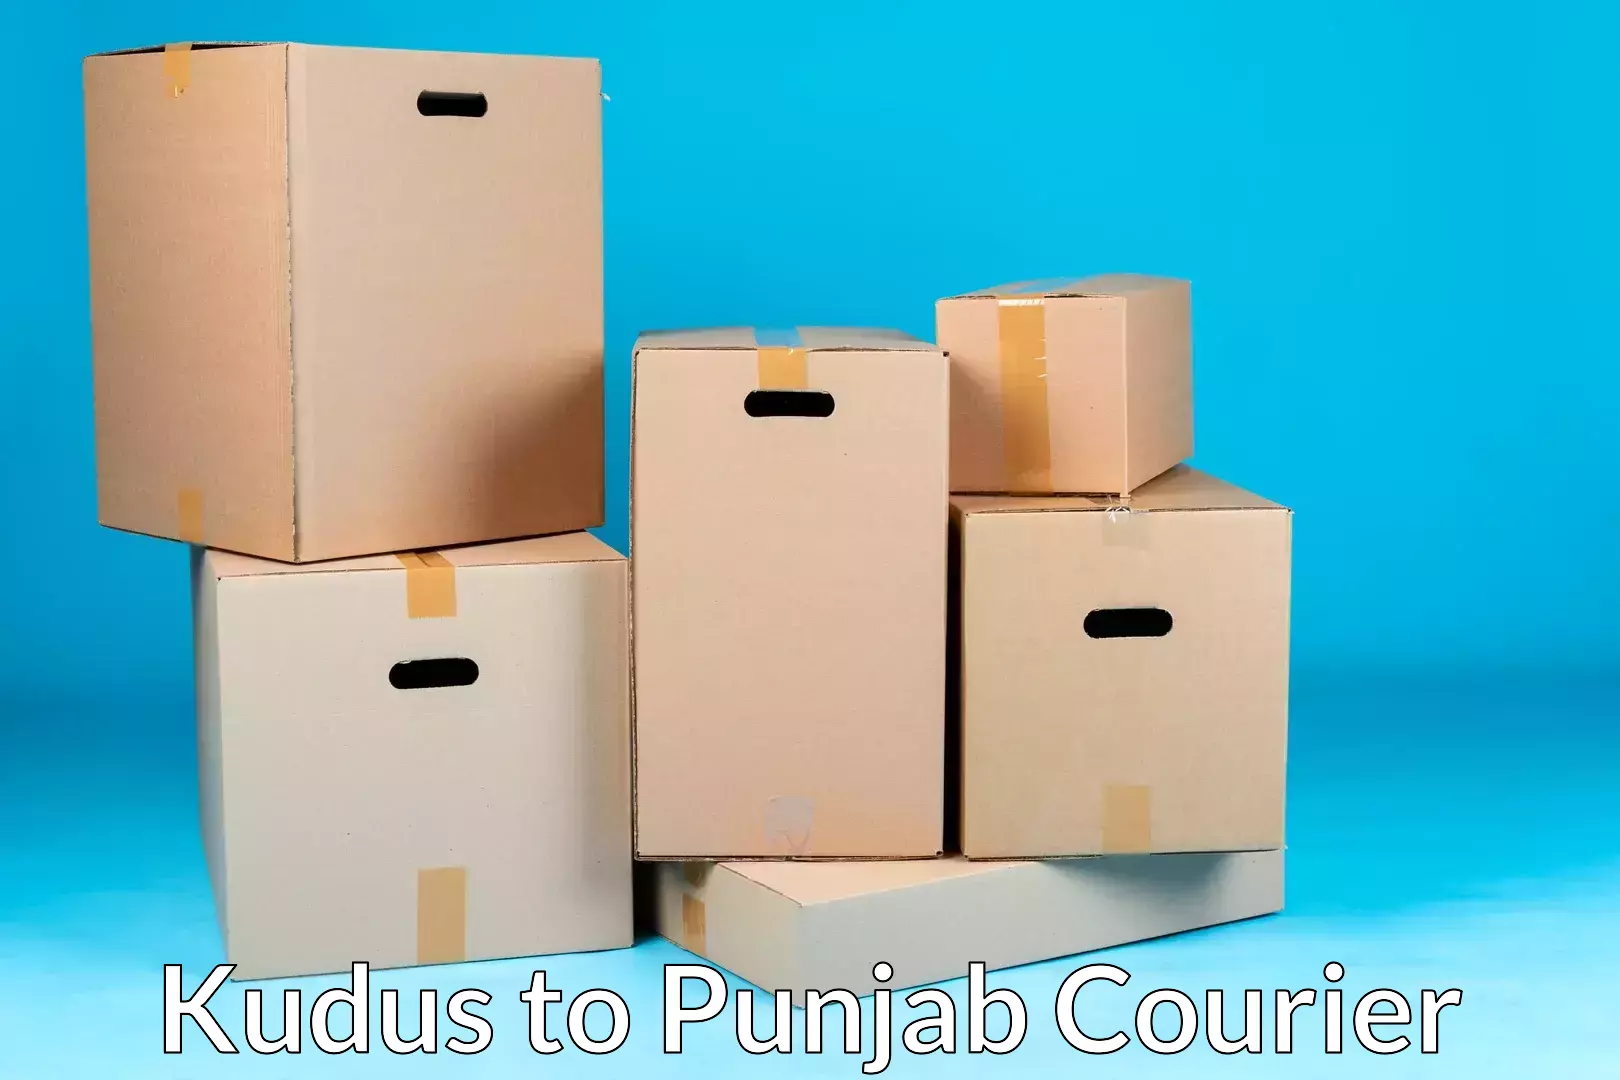 Home moving experts Kudus to Punjab